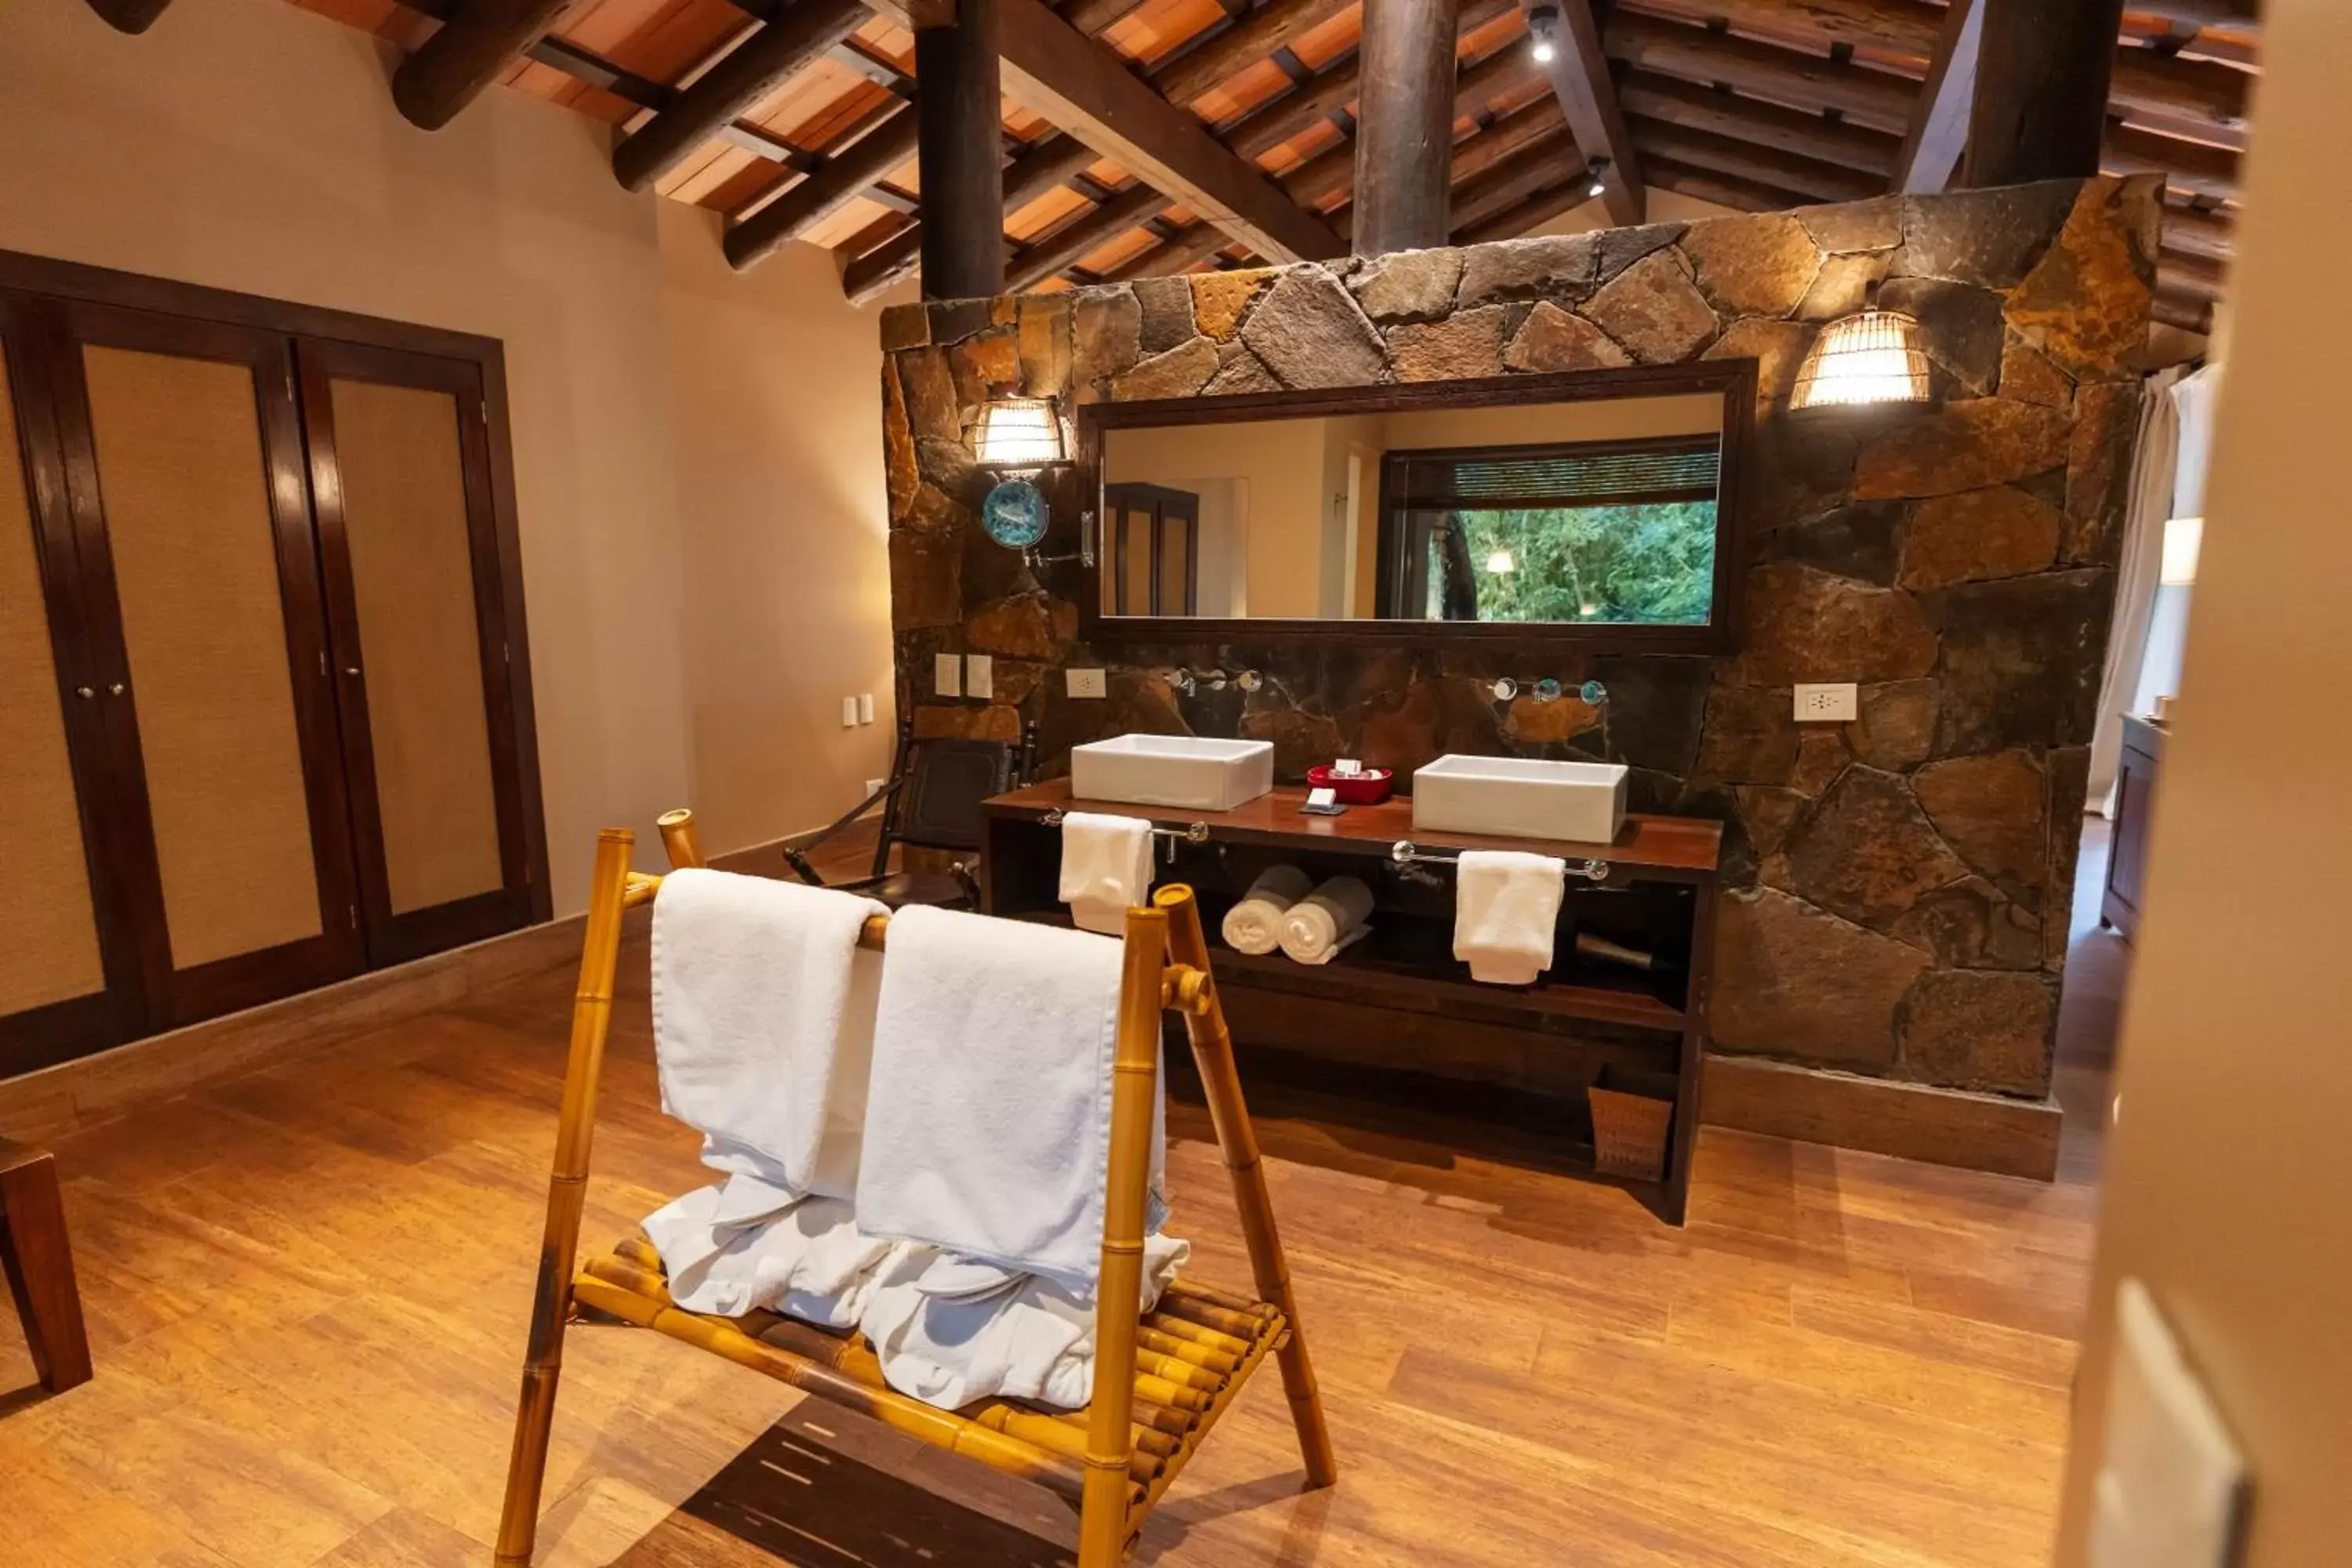 Bathroom, Dining Area in Loi Suites Iguazu Hotel